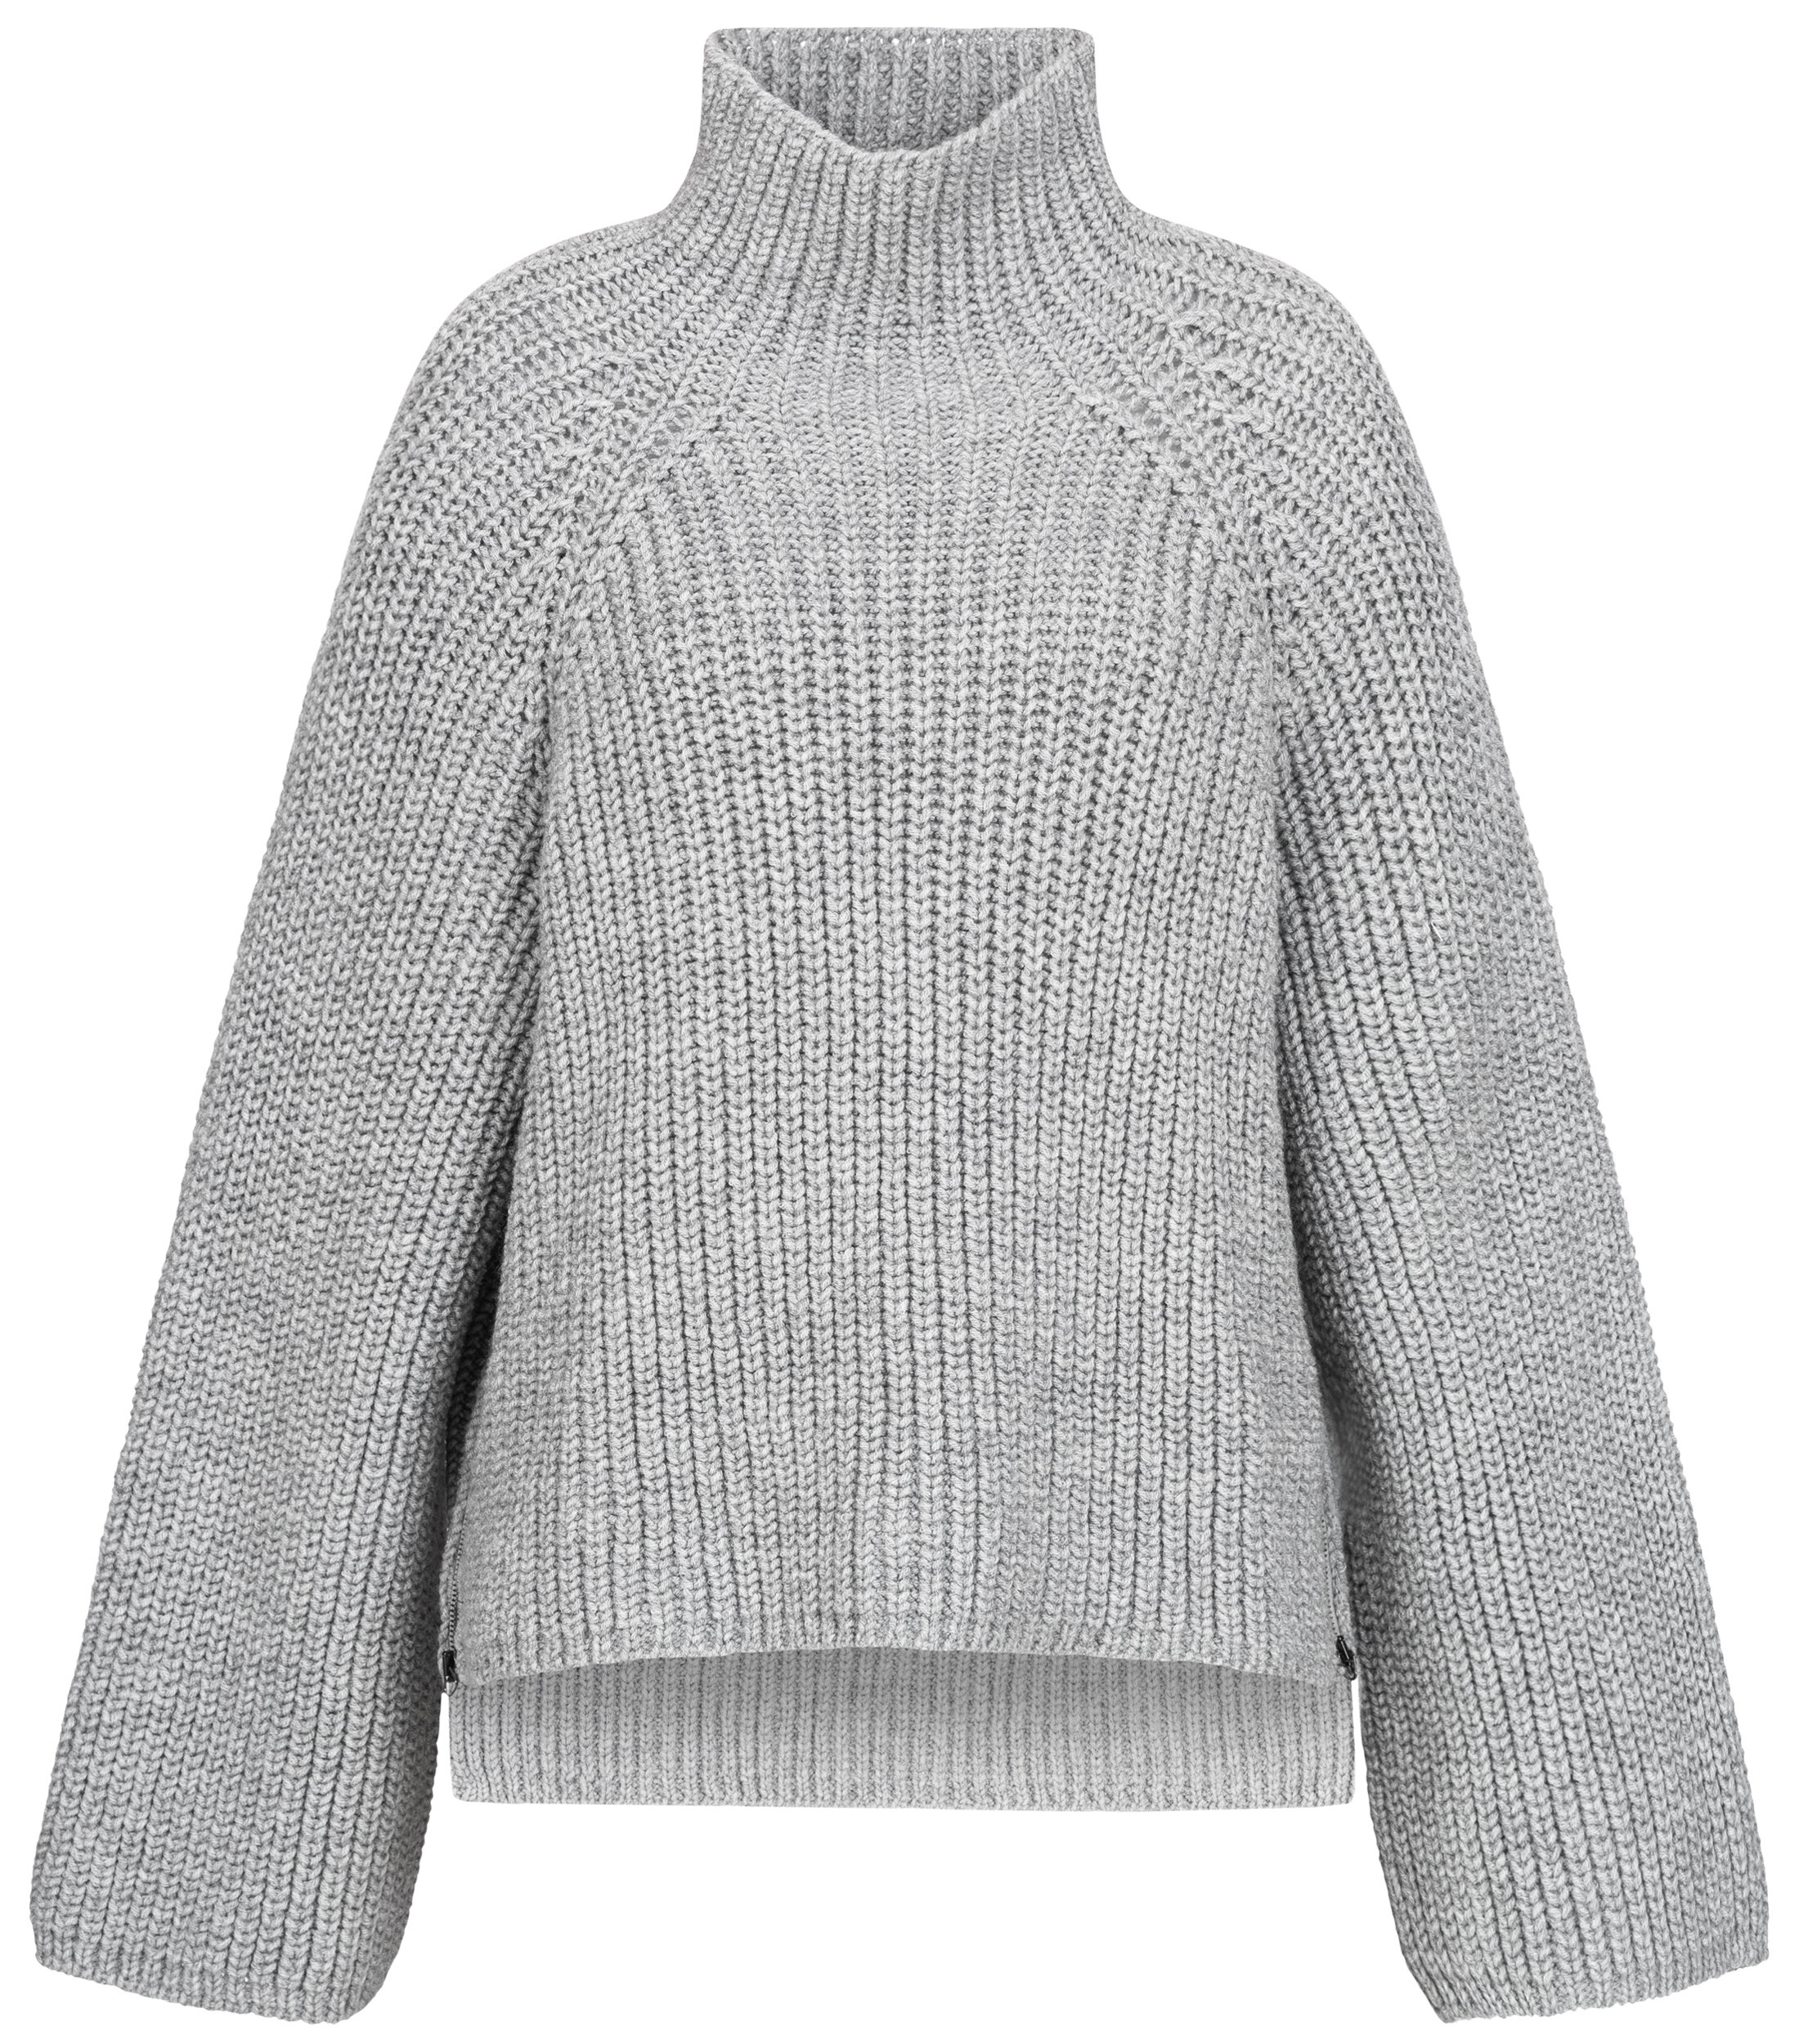 Mode Sweaters Wollen truien Annette Görtz Annette G\u00f6rtz Wollen trui khaki kabel steek zakelijke stijl 